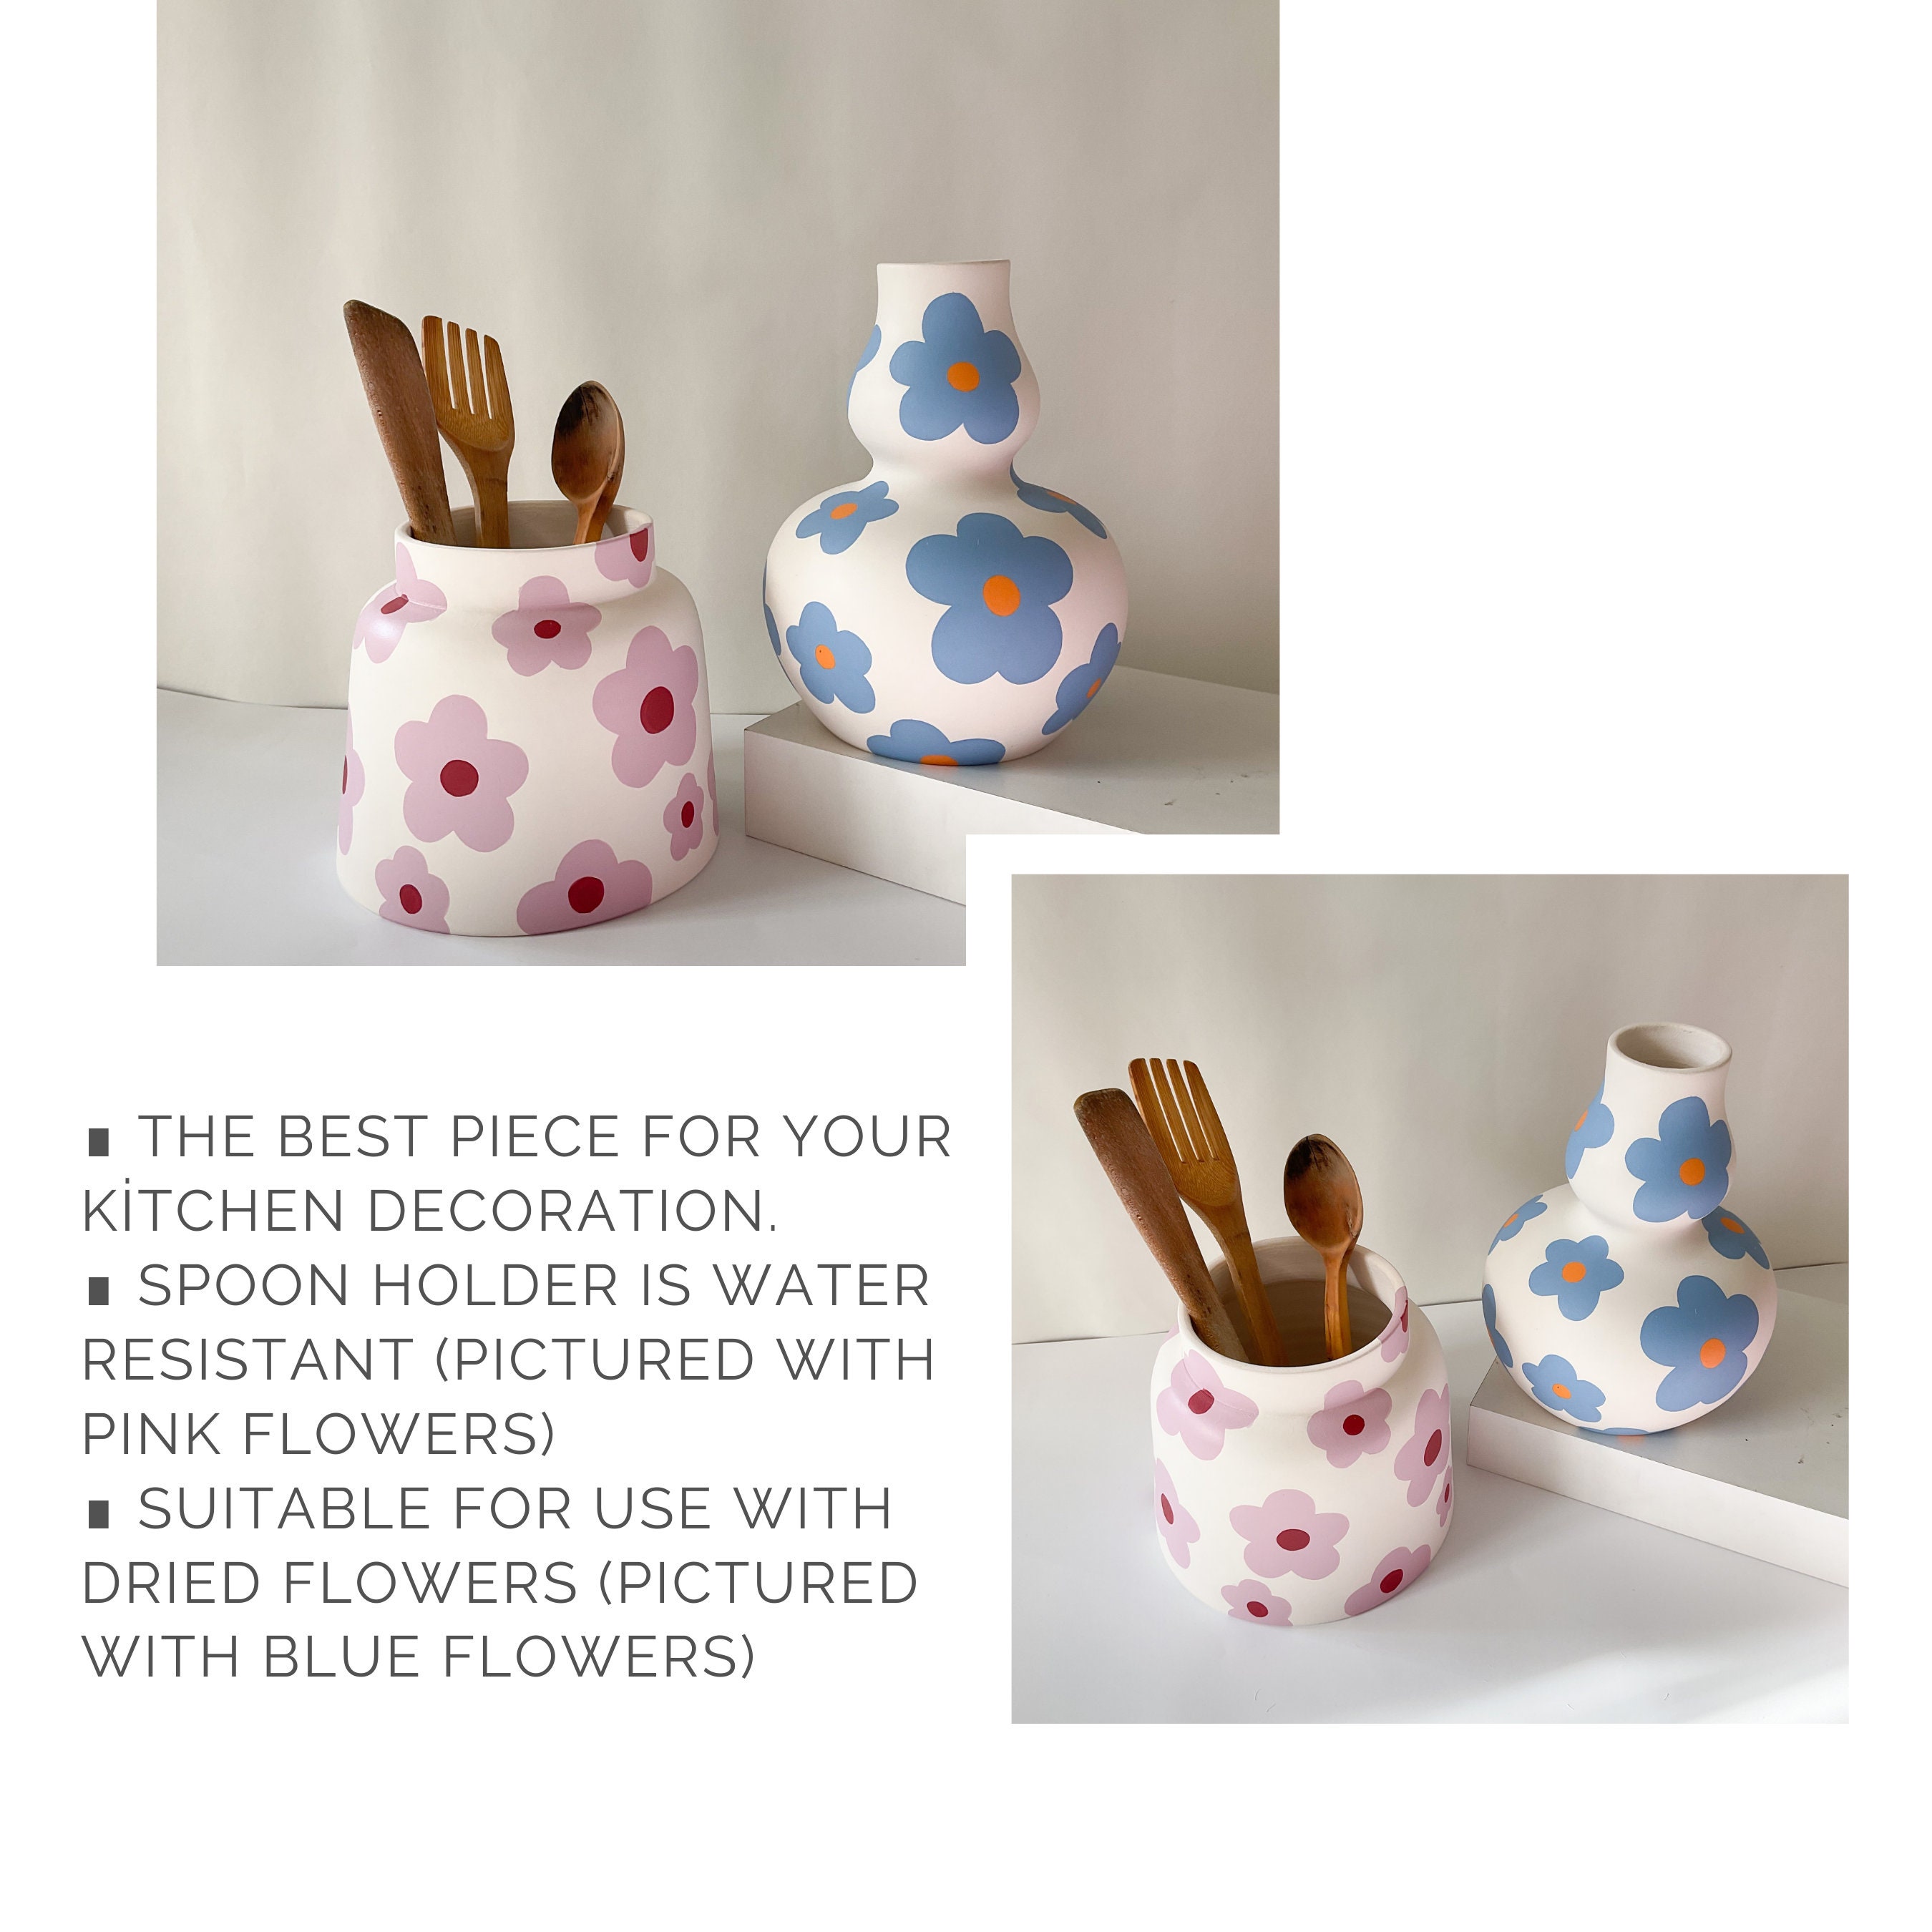 Ceramic Vase White Flower Vase (Handmade) Purse Ceramic Vases for Flowers  Cute Clover Vases for Decor Makeup Brush Holder Organizer&Pen Holder